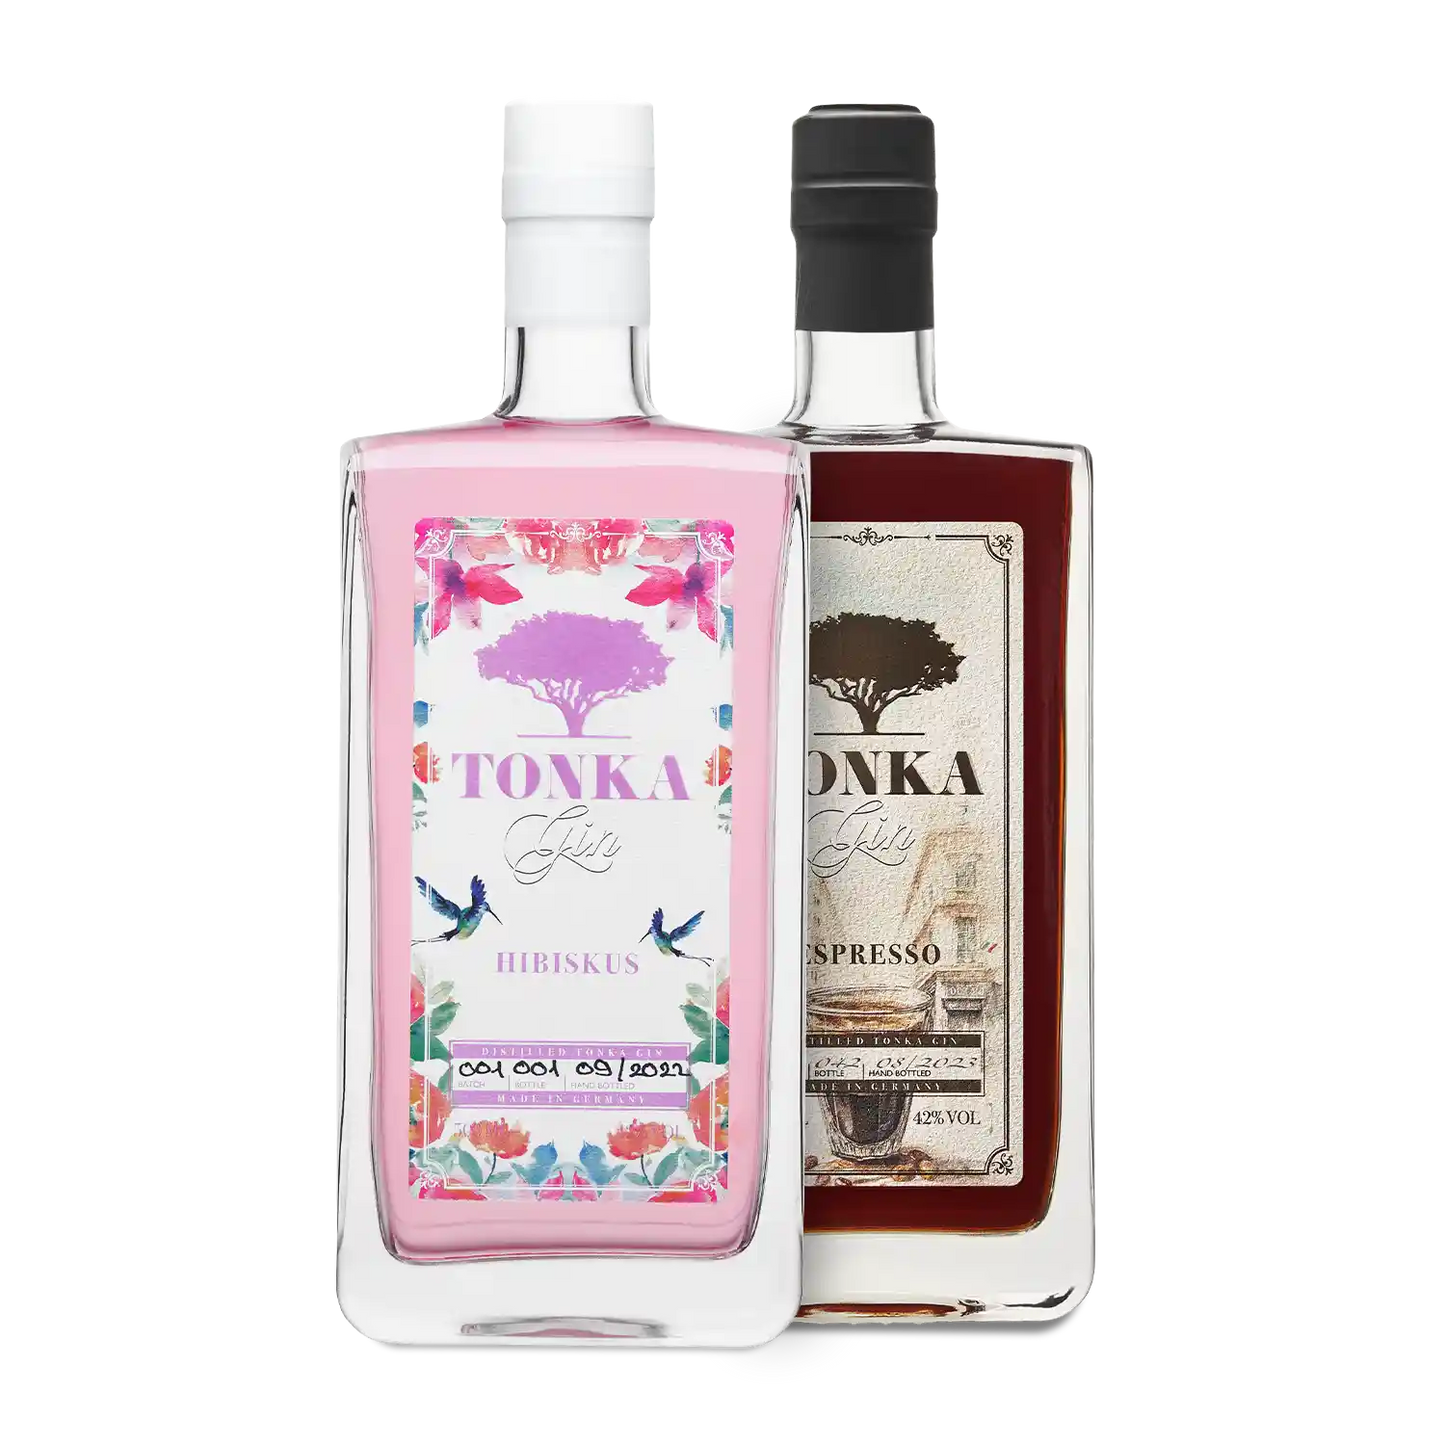 – Tonka | Gin Das Spirituosenliebhaber perfekte Gin-Liebhaber Flavor-Bundle Geschenk